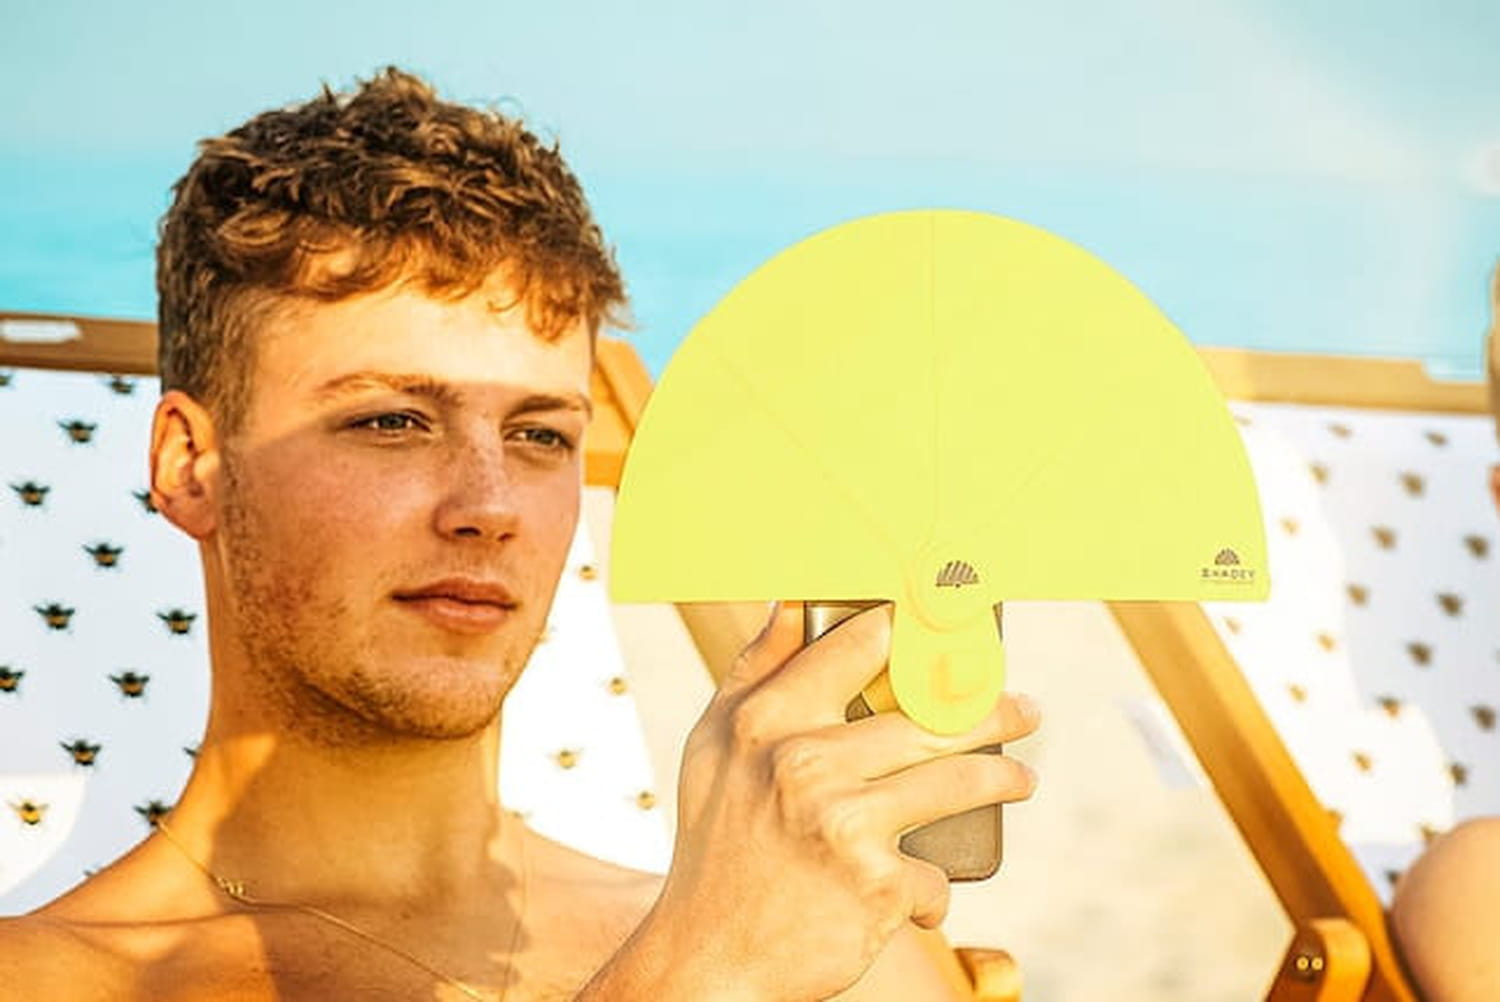 Cet accessoire pour smartphone pourrait déferler sur les plages cet été, mais à quoi sert-il ?